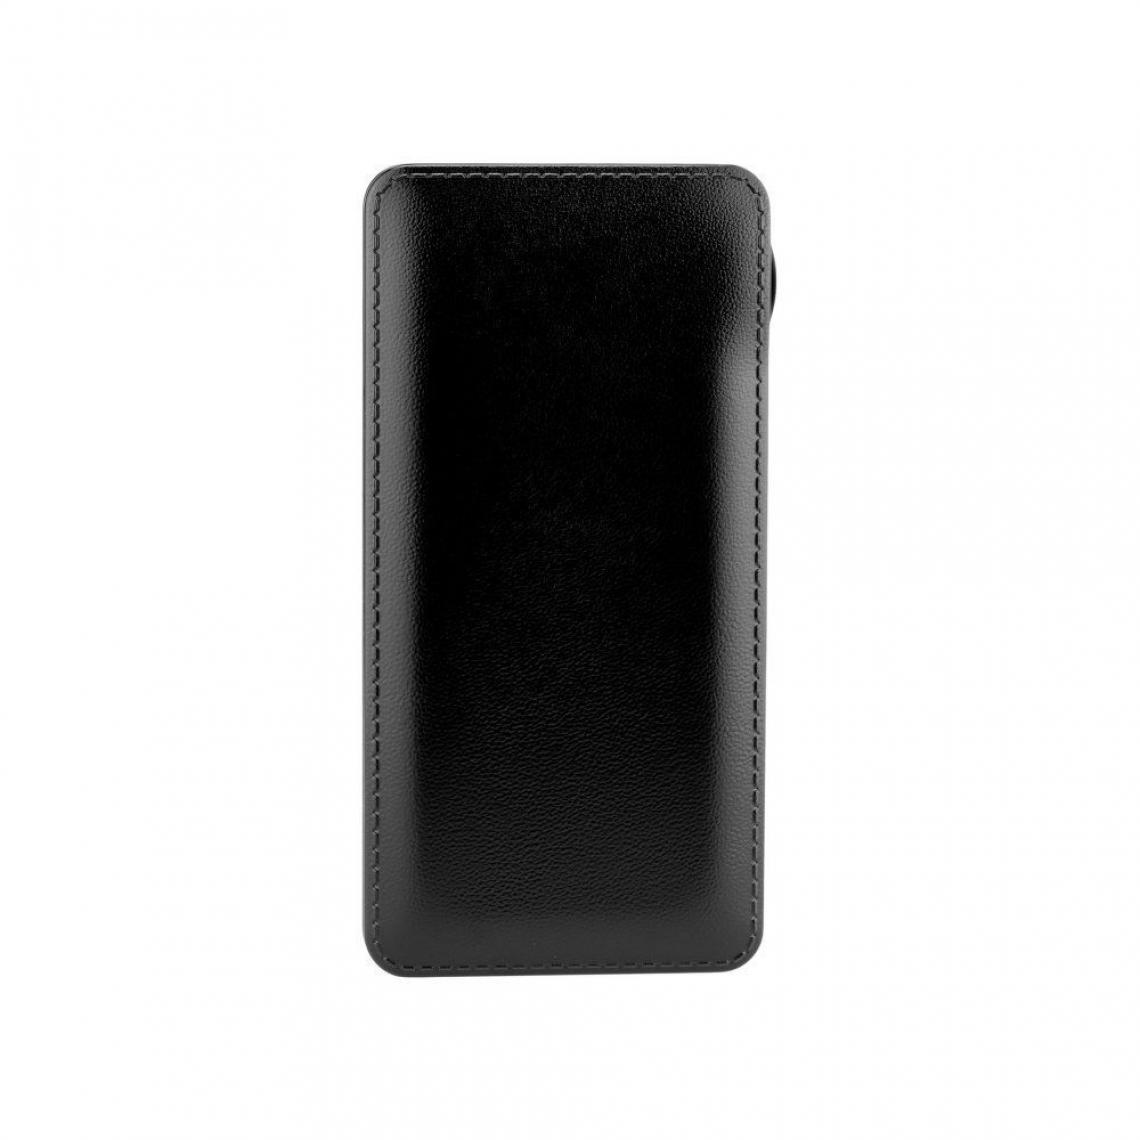 Ozzzo - Chargeur batterie externe 30000 mAh powerbank ozzzo noir pour Logicom M bot Tab 70 Pack Gaming - Autres accessoires smartphone